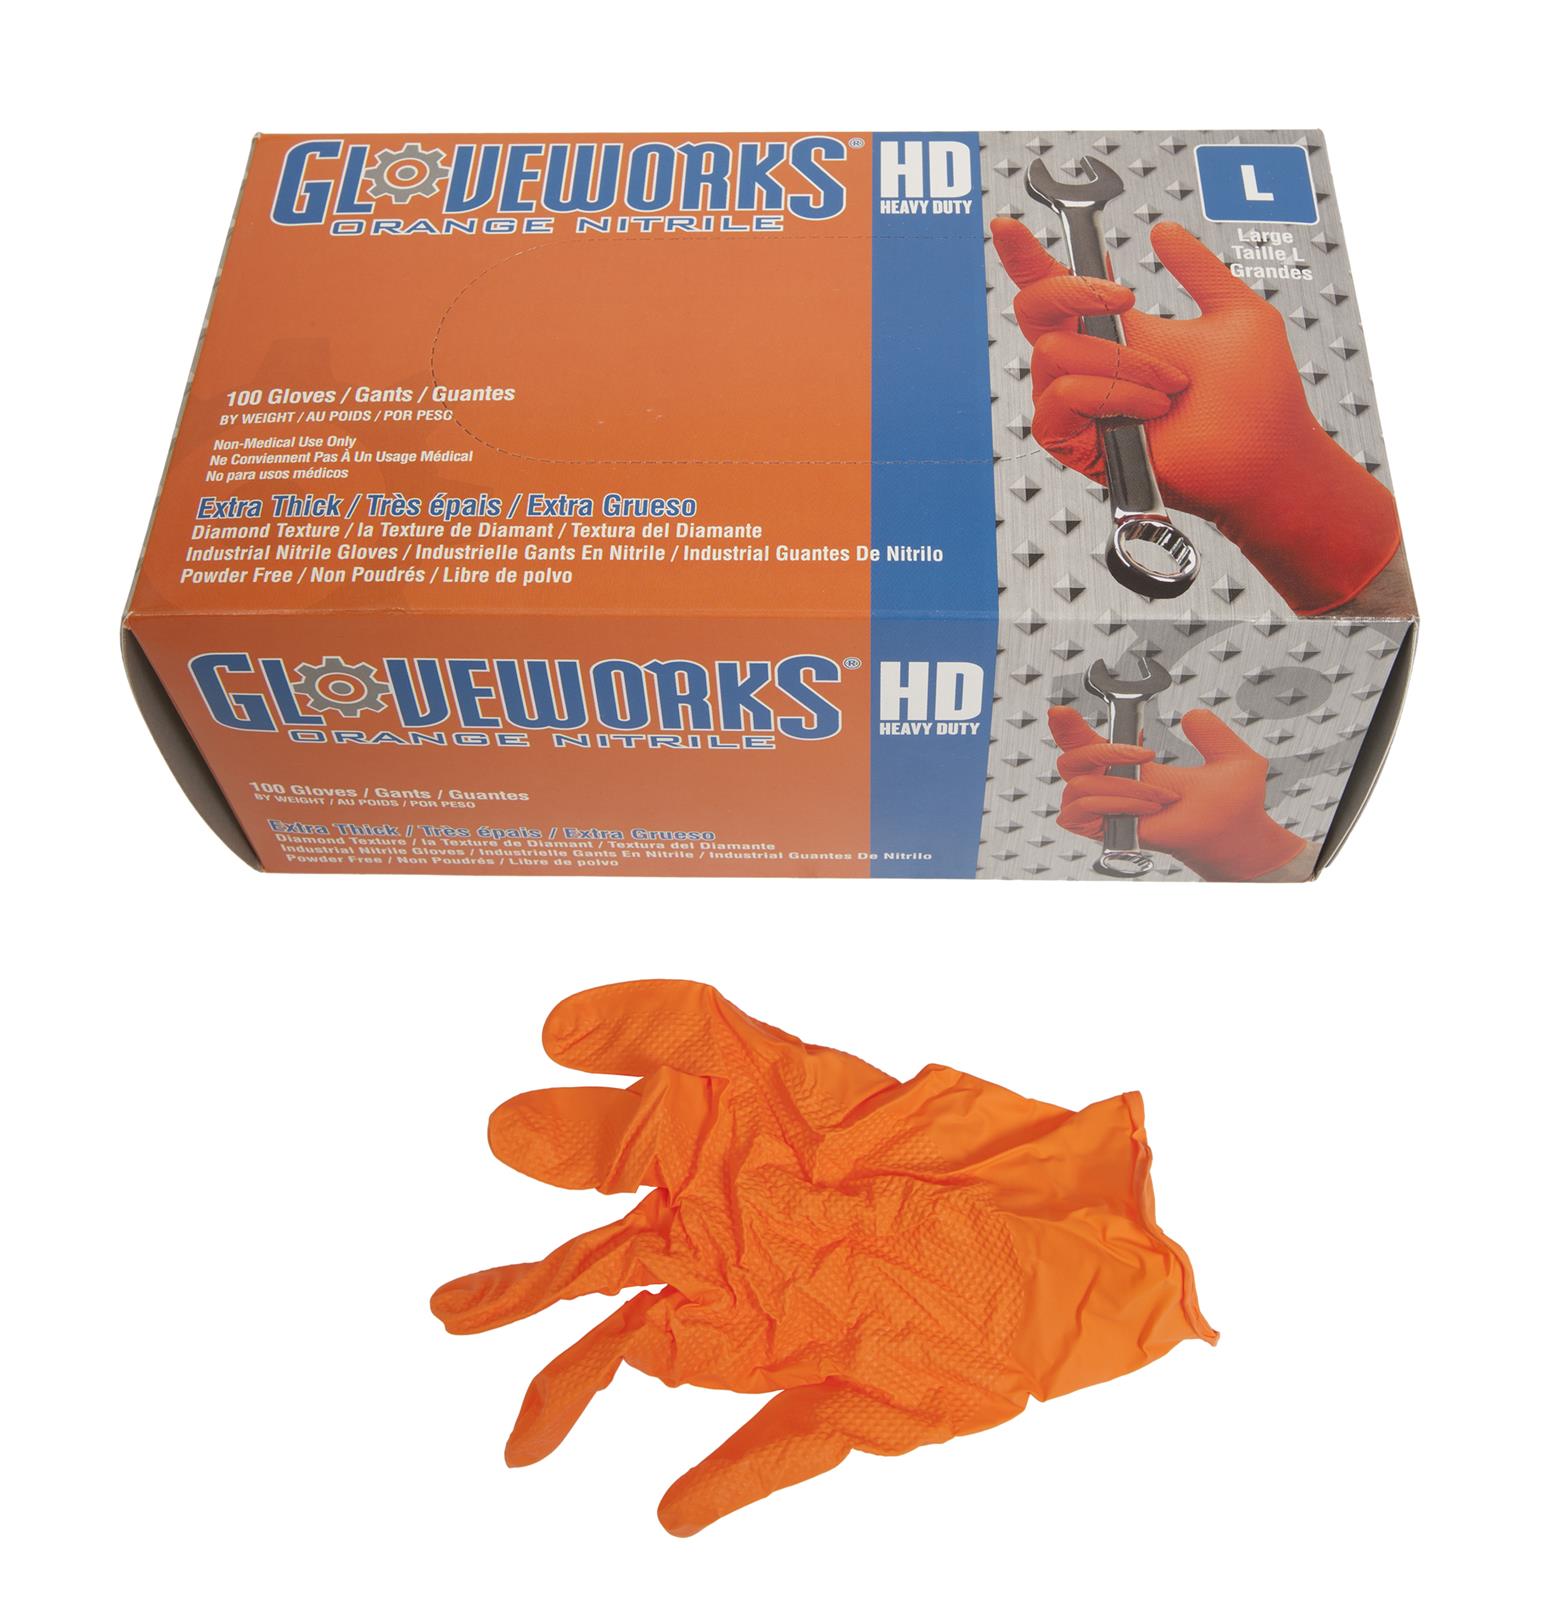 orange medical gloves